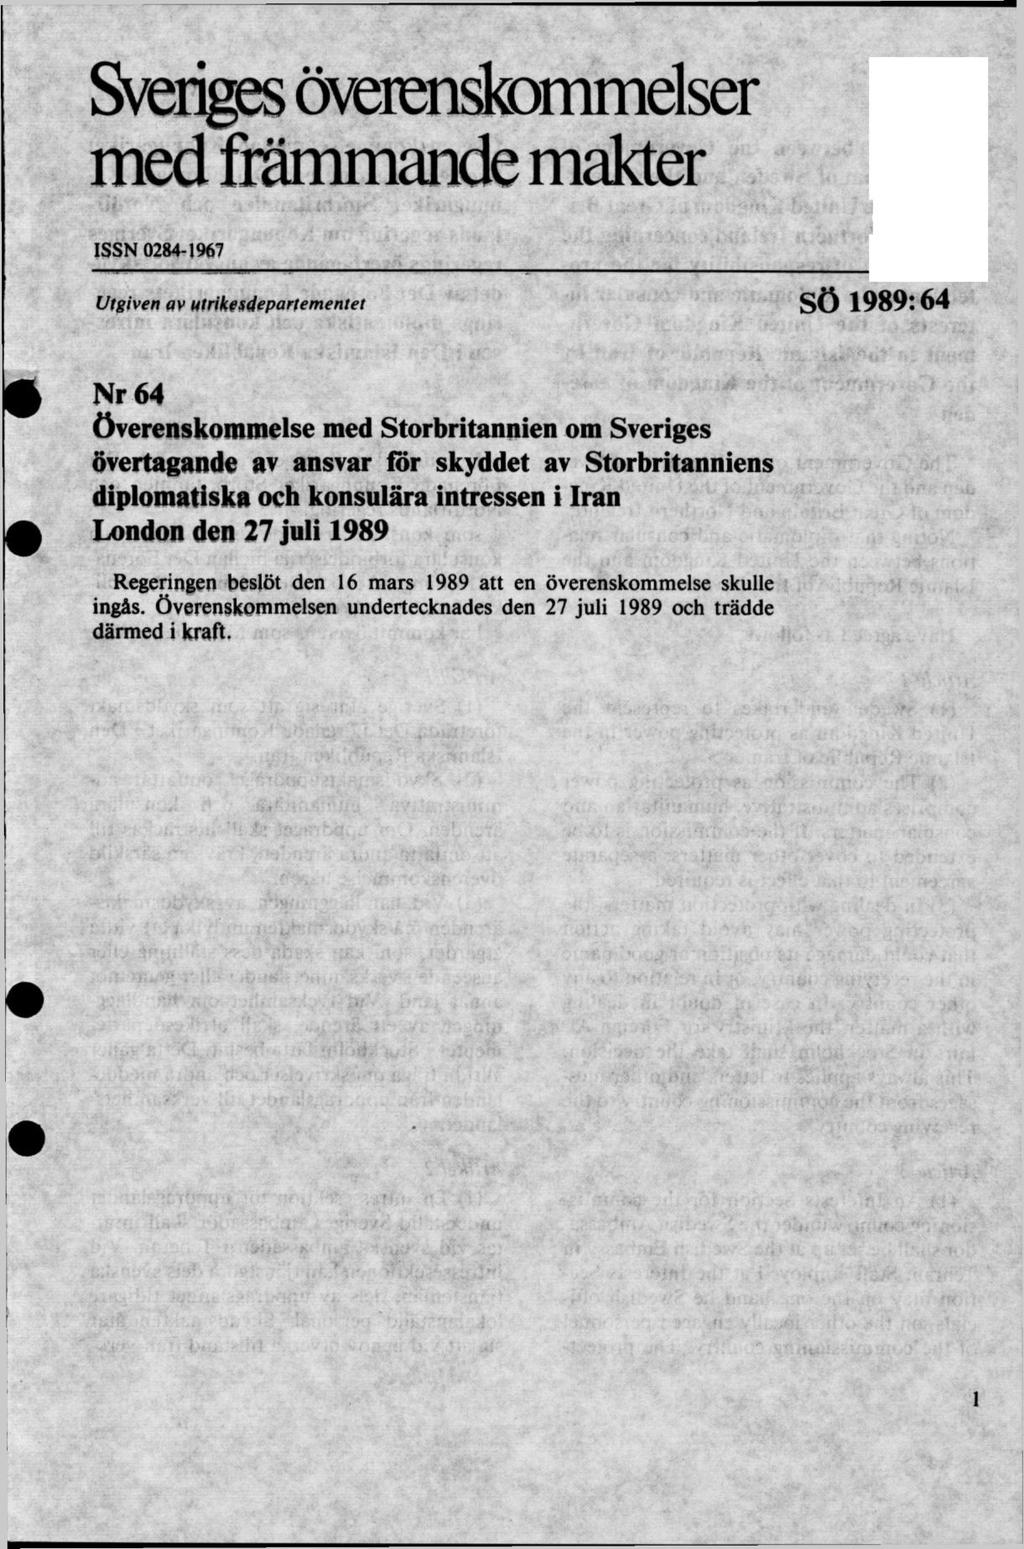 Sveriges överenskommelser med främmande makter ISSN 0284-1967 Utgiven av utrikesdepartementet SÖ 1989:64